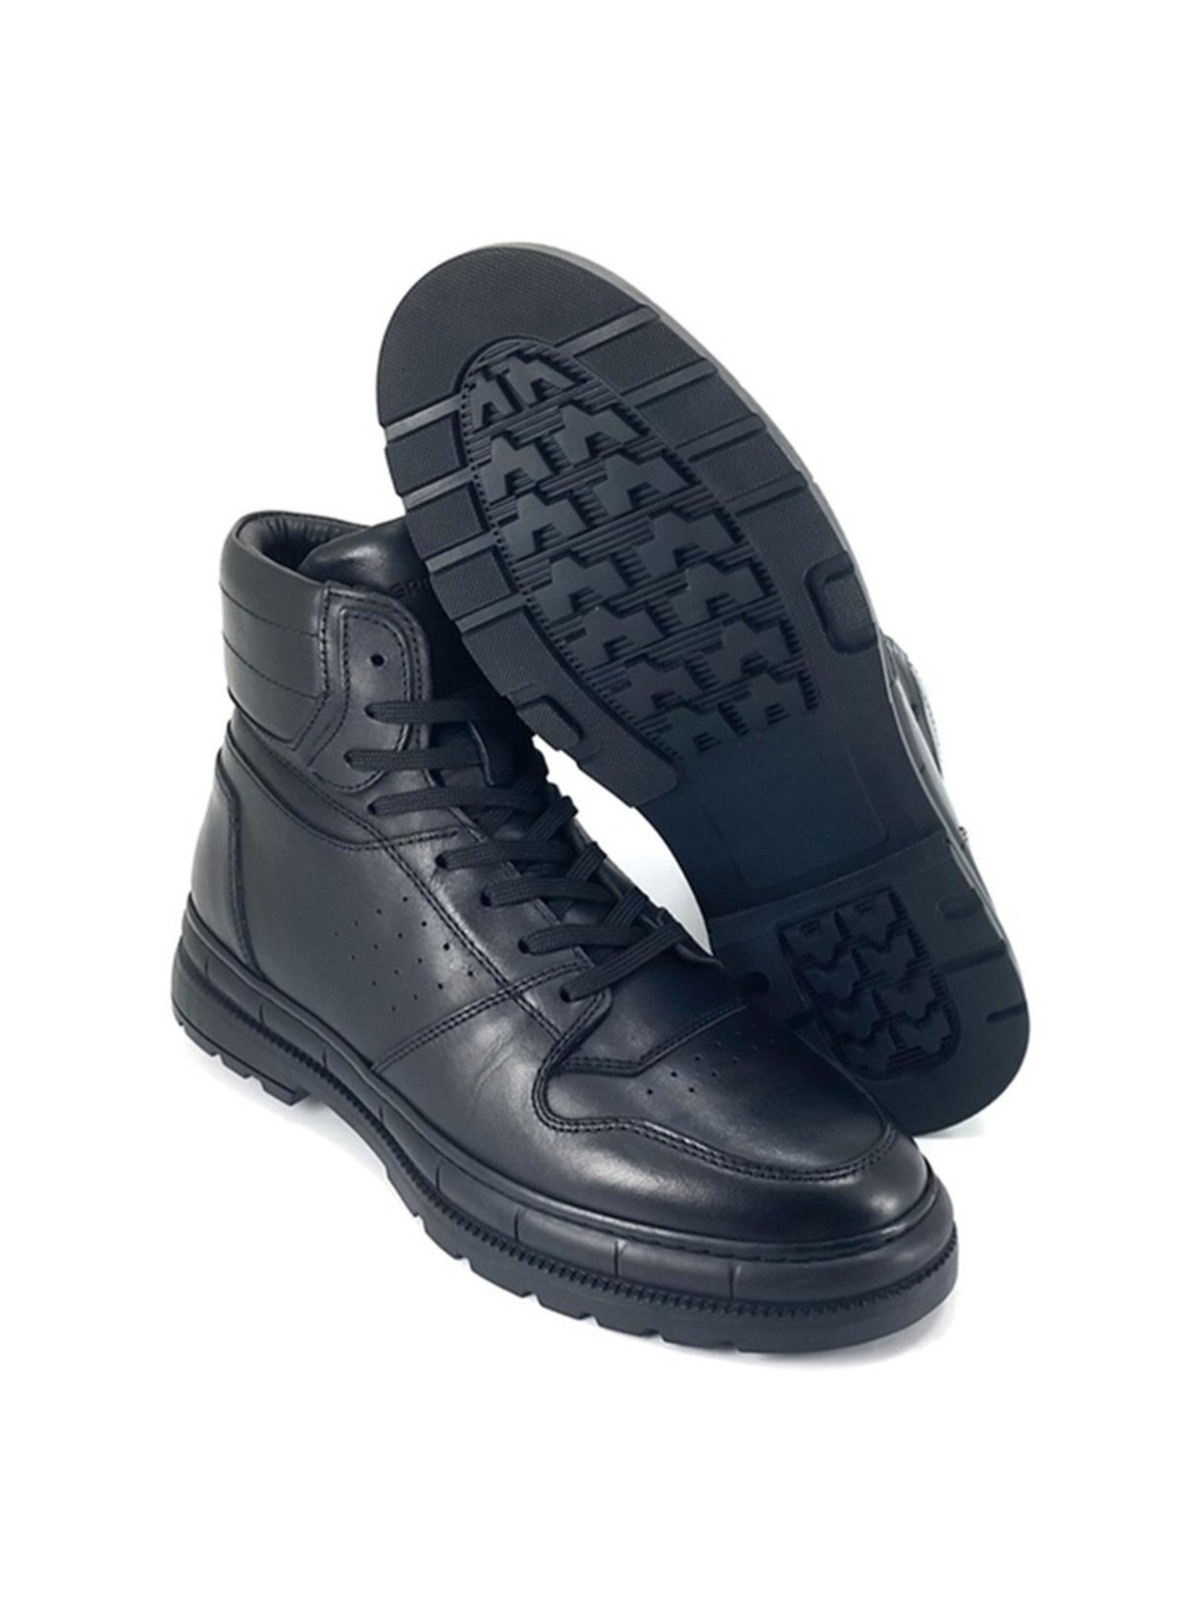 Black - Casual - Men Shoes